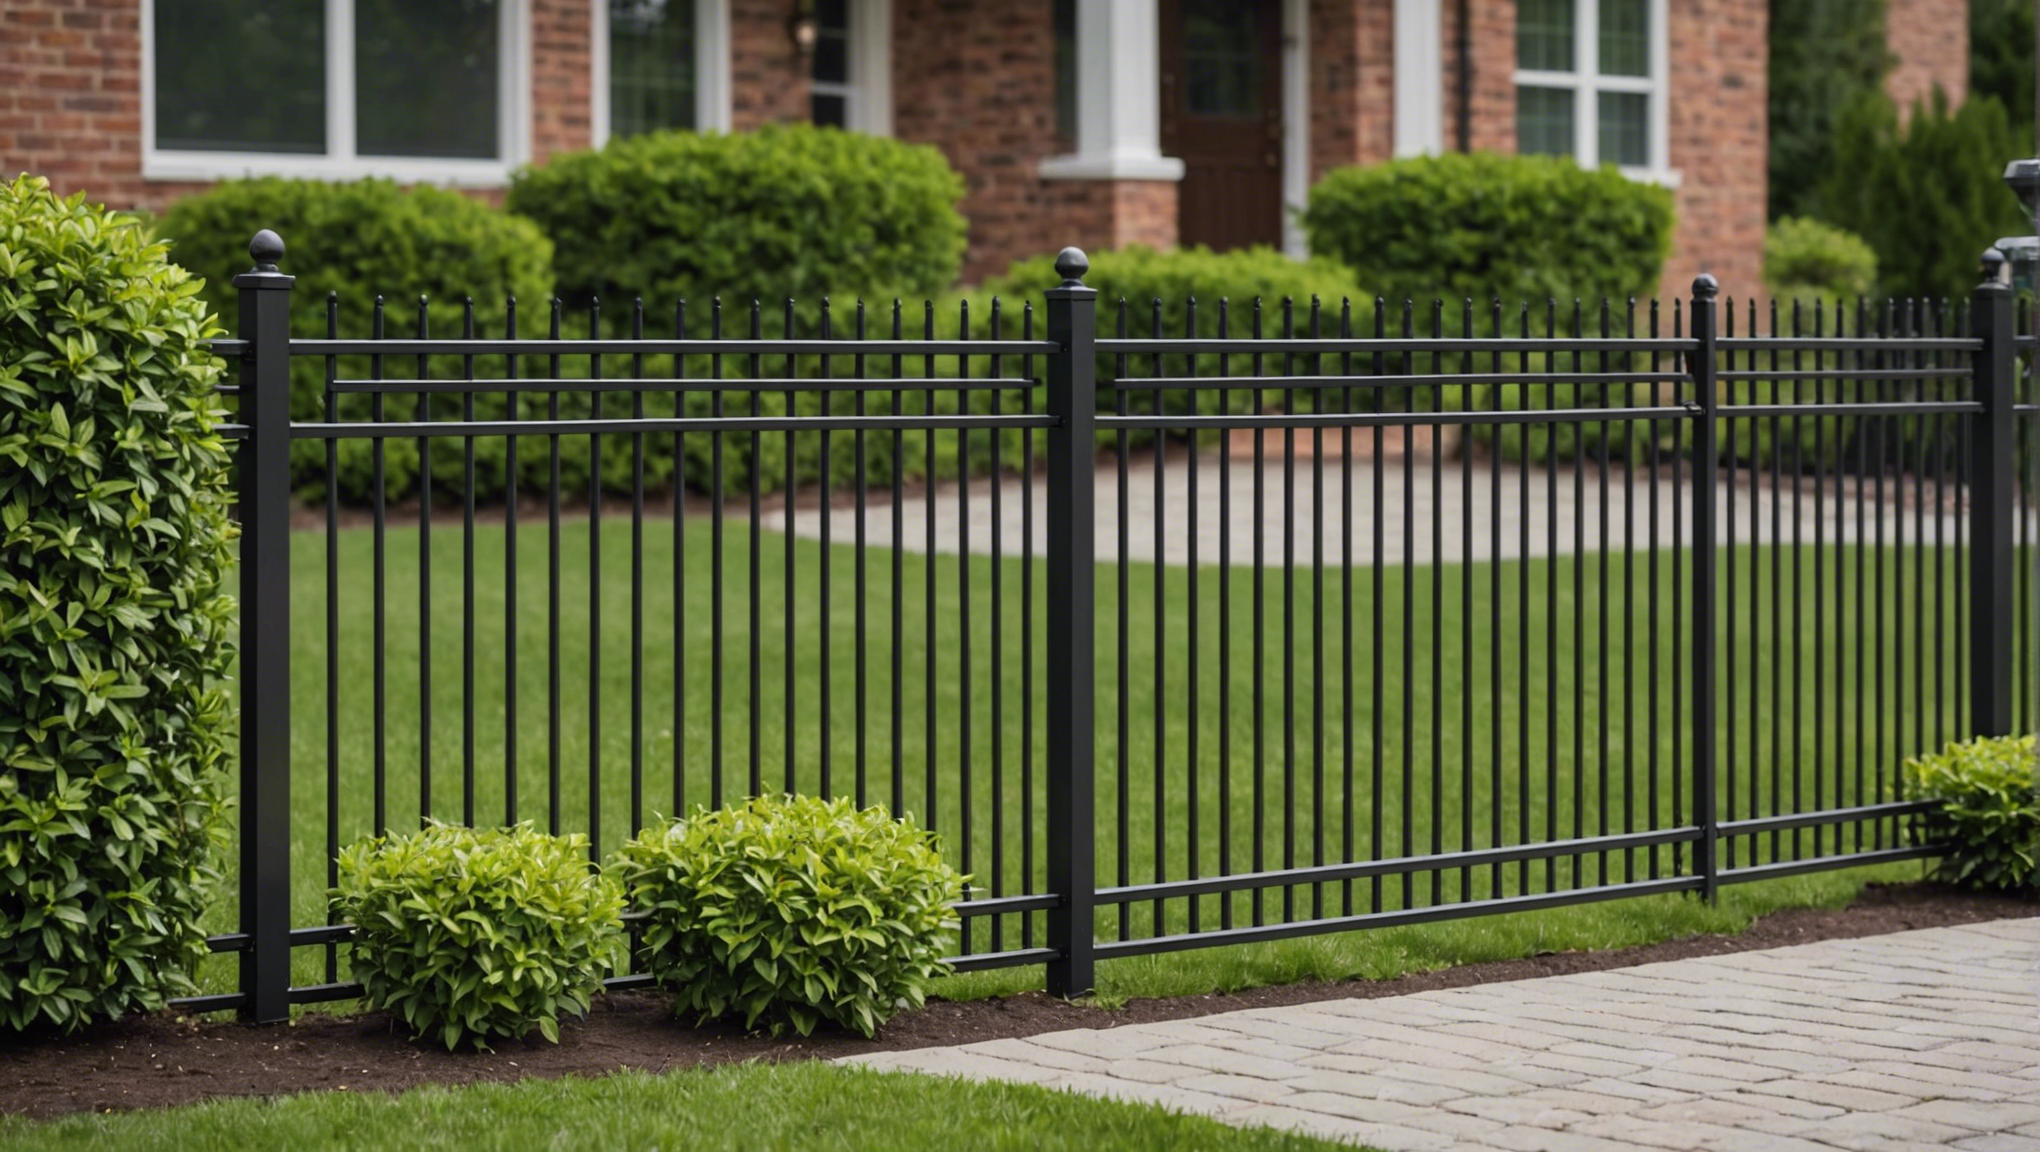 découvrez les avantages et les raisons d'opter pour une clôture en aluminium pour votre propriété. robuste, esthétique et facile d'entretien, la clôture en aluminium offre une solution moderne et durable pour délimiter votre espace extérieur.